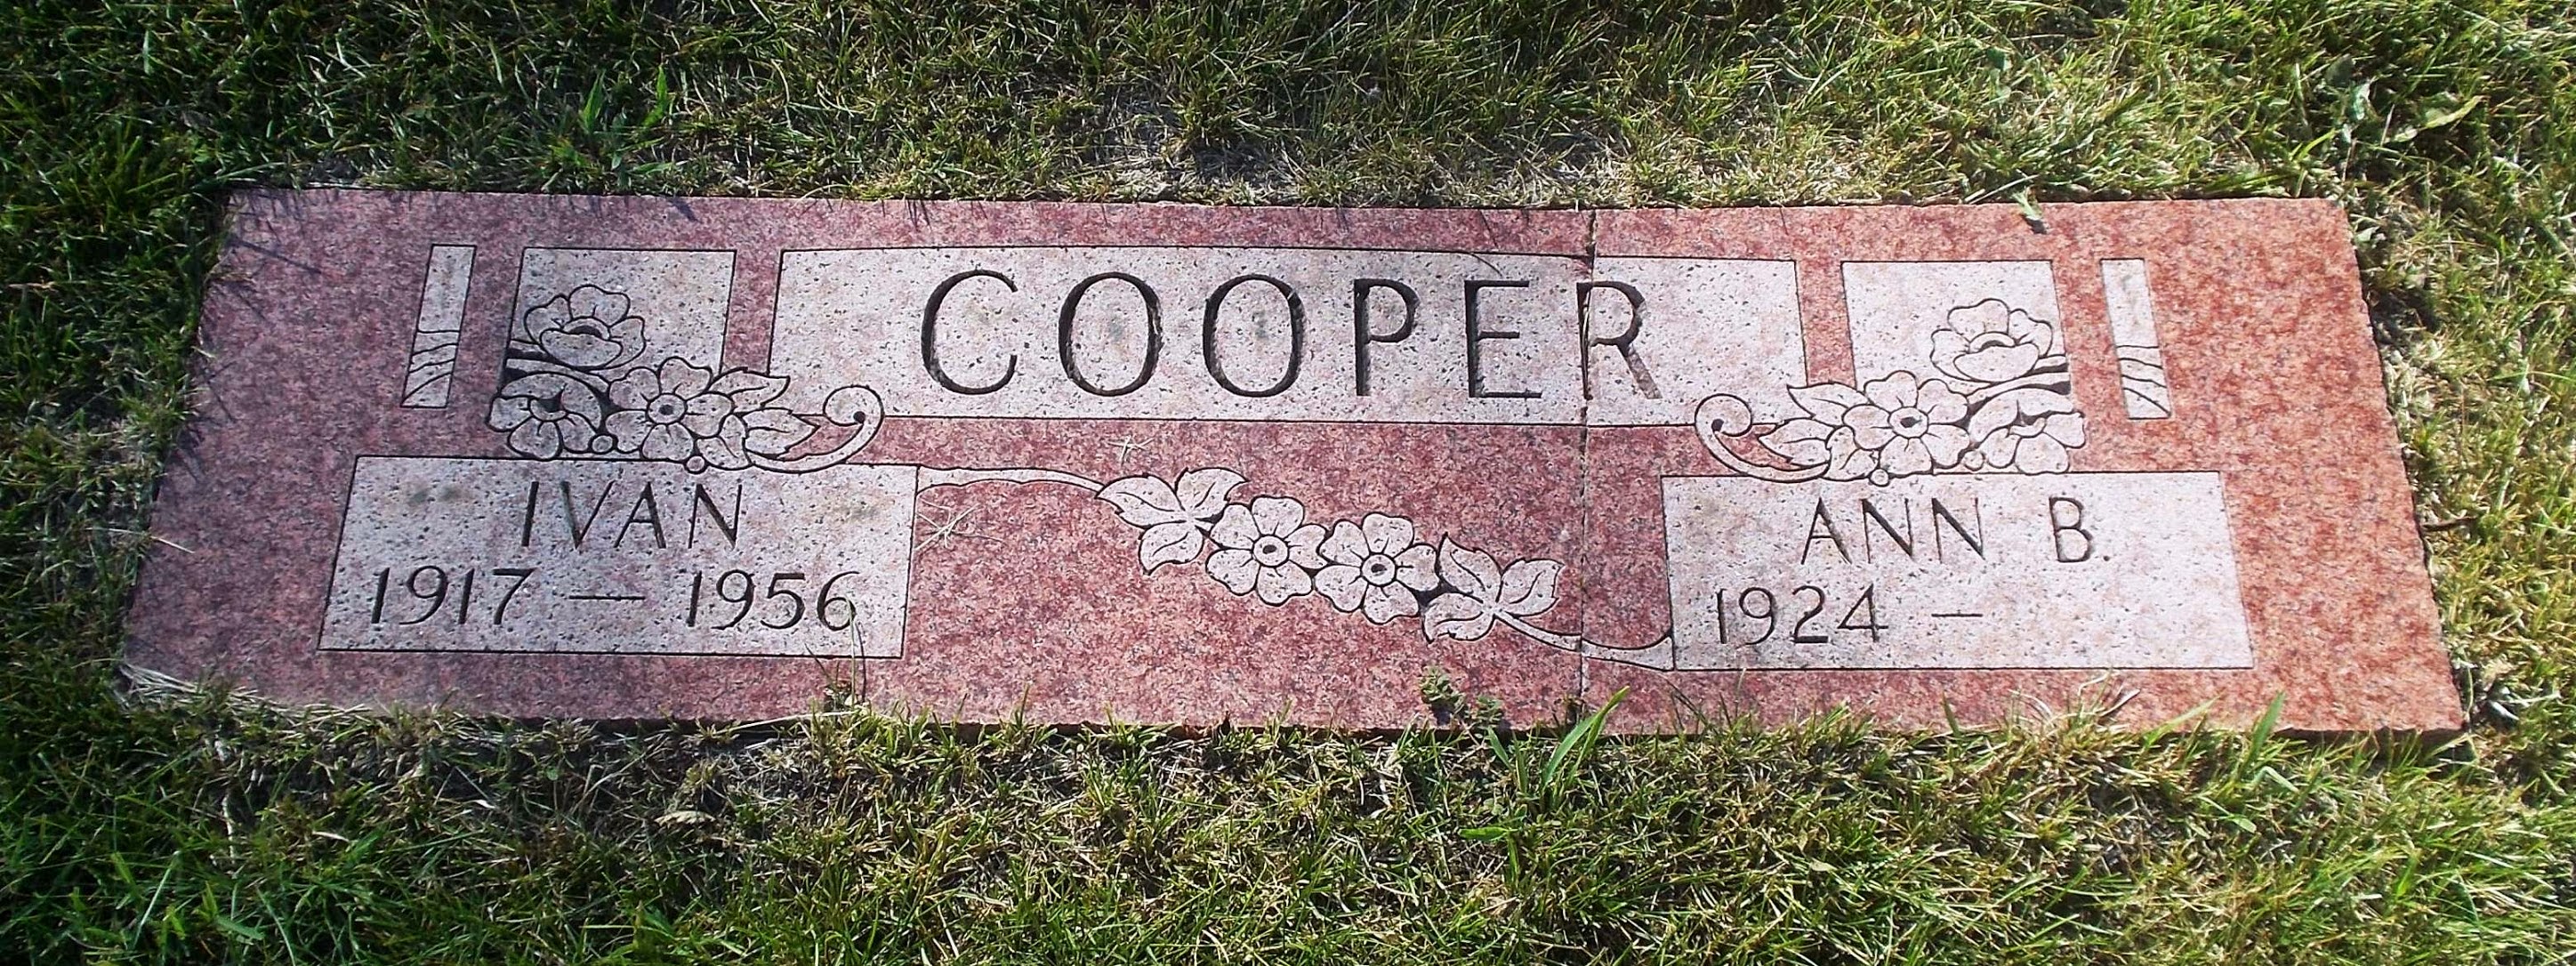 Ivan Cooper